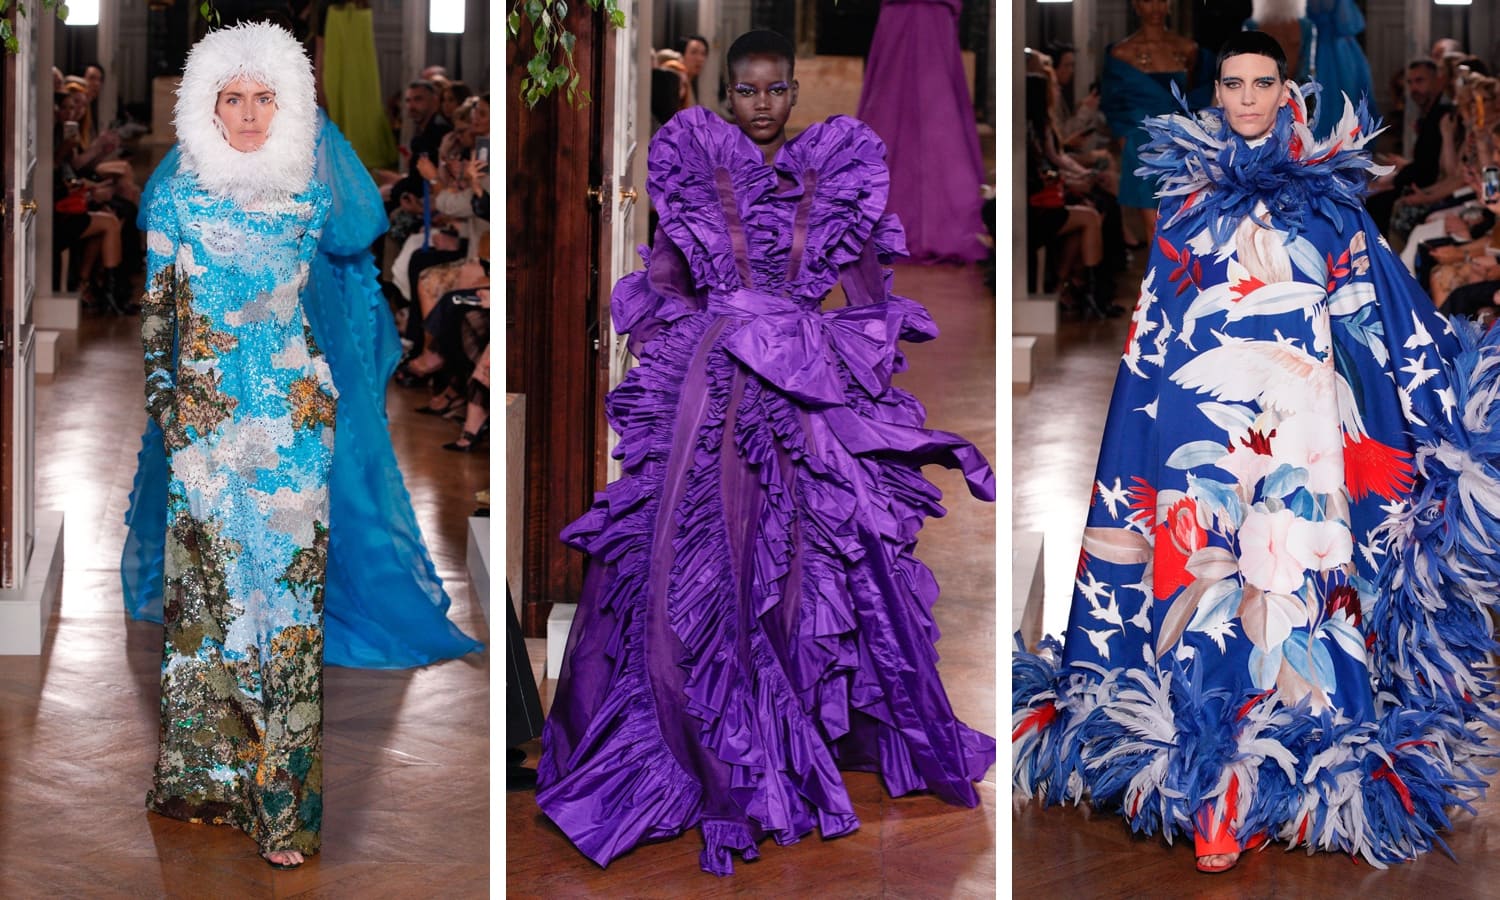 Фото с показа коллекции Пьерпаоло Пиччоли на Неделе высокой моды в париже 2019